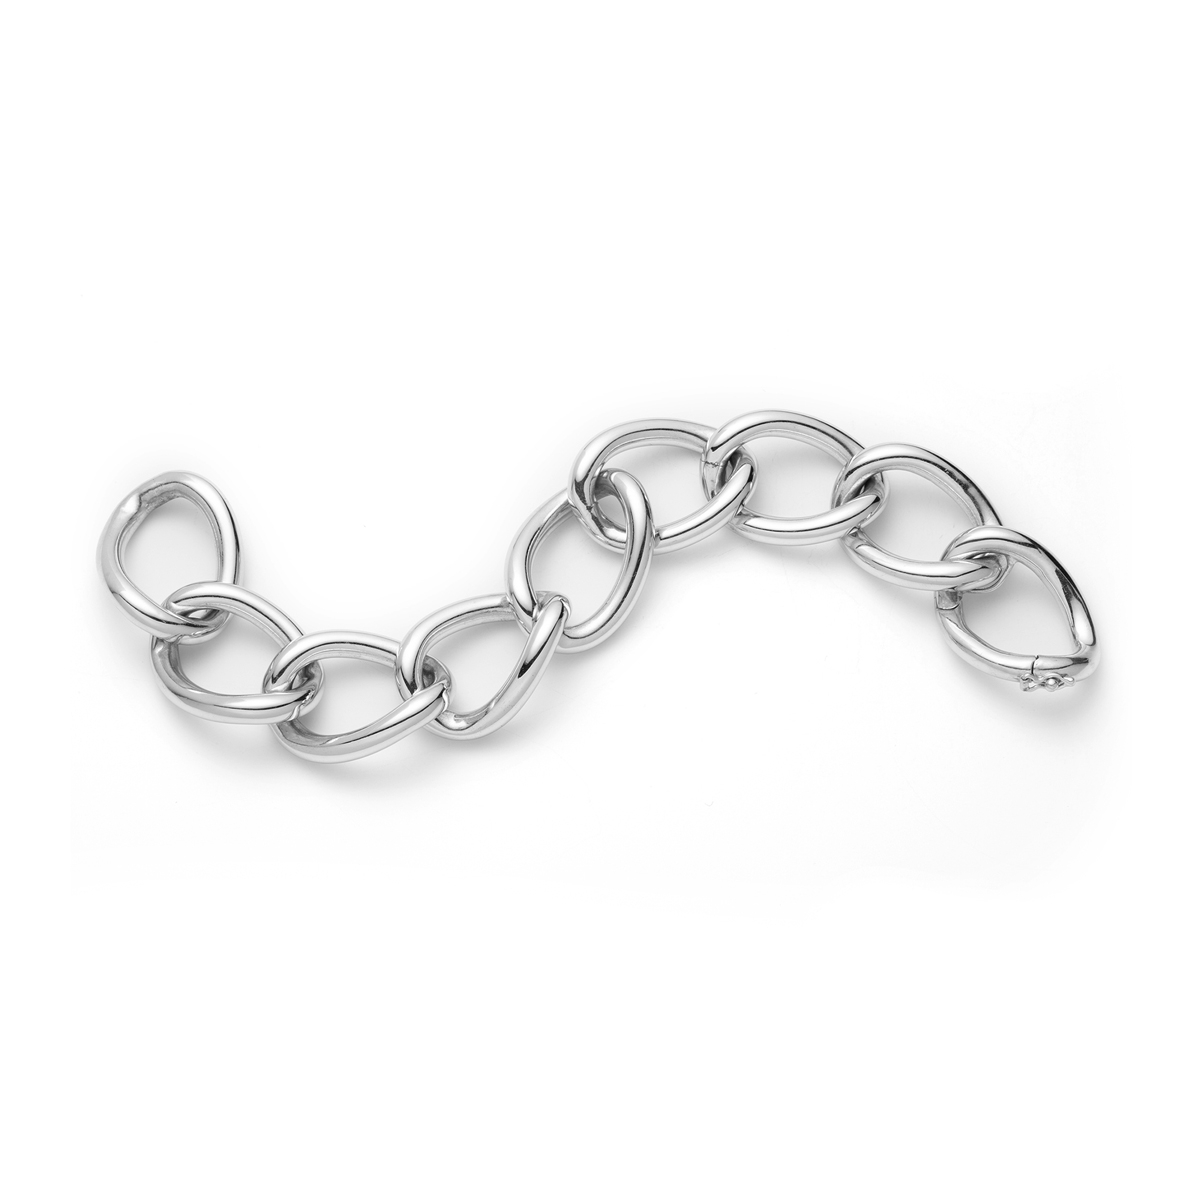 Silver Chain Link Bracelet 